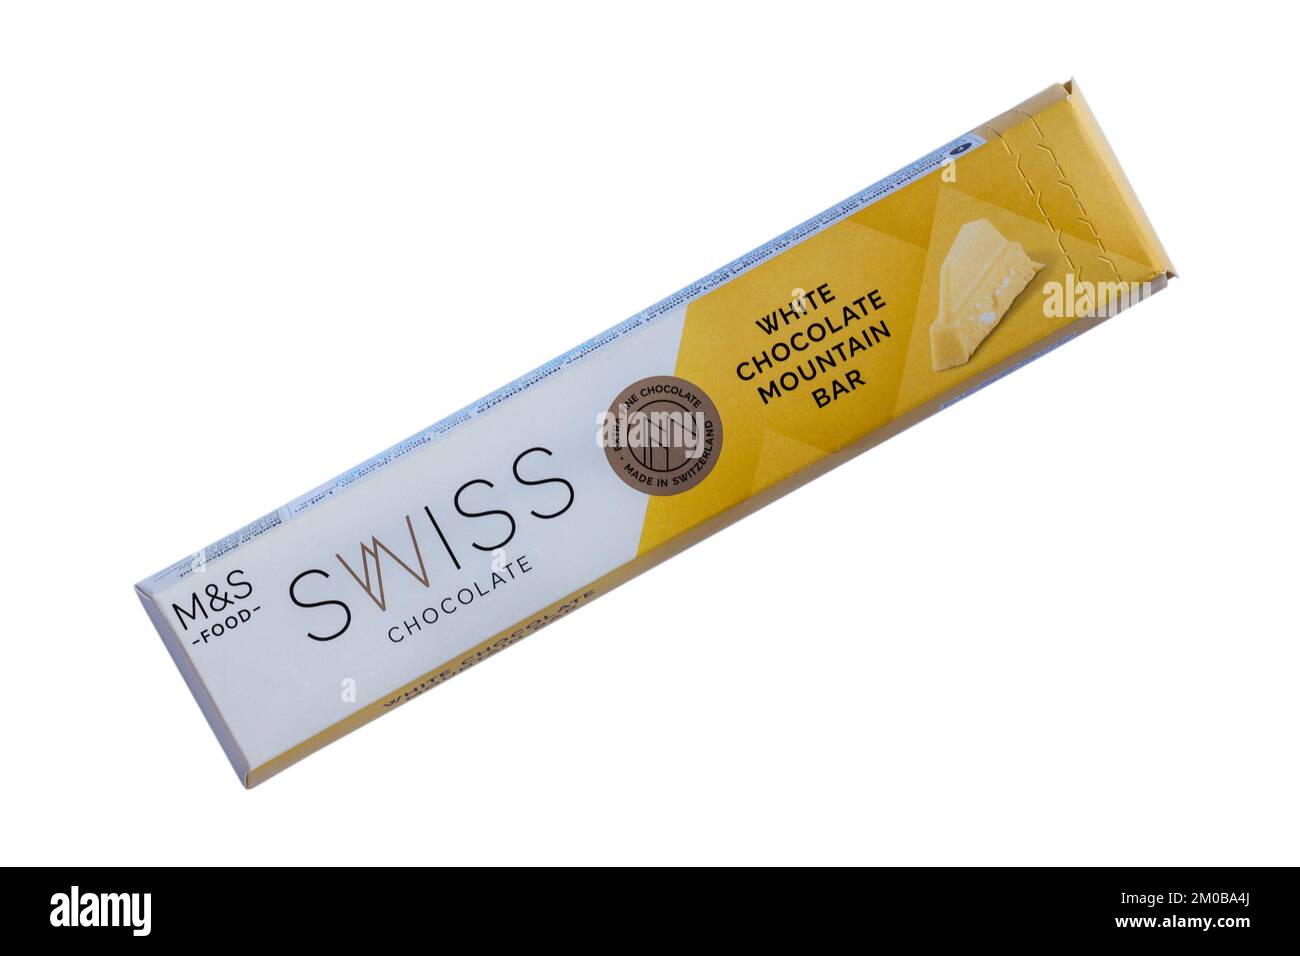 Swiss Chocolate White Chocolate Mountain Bar von M&S isoliert auf weißem Hintergrund - Schweizer weiße Schokolade mit Honig und Mandel Nougat Stockfoto